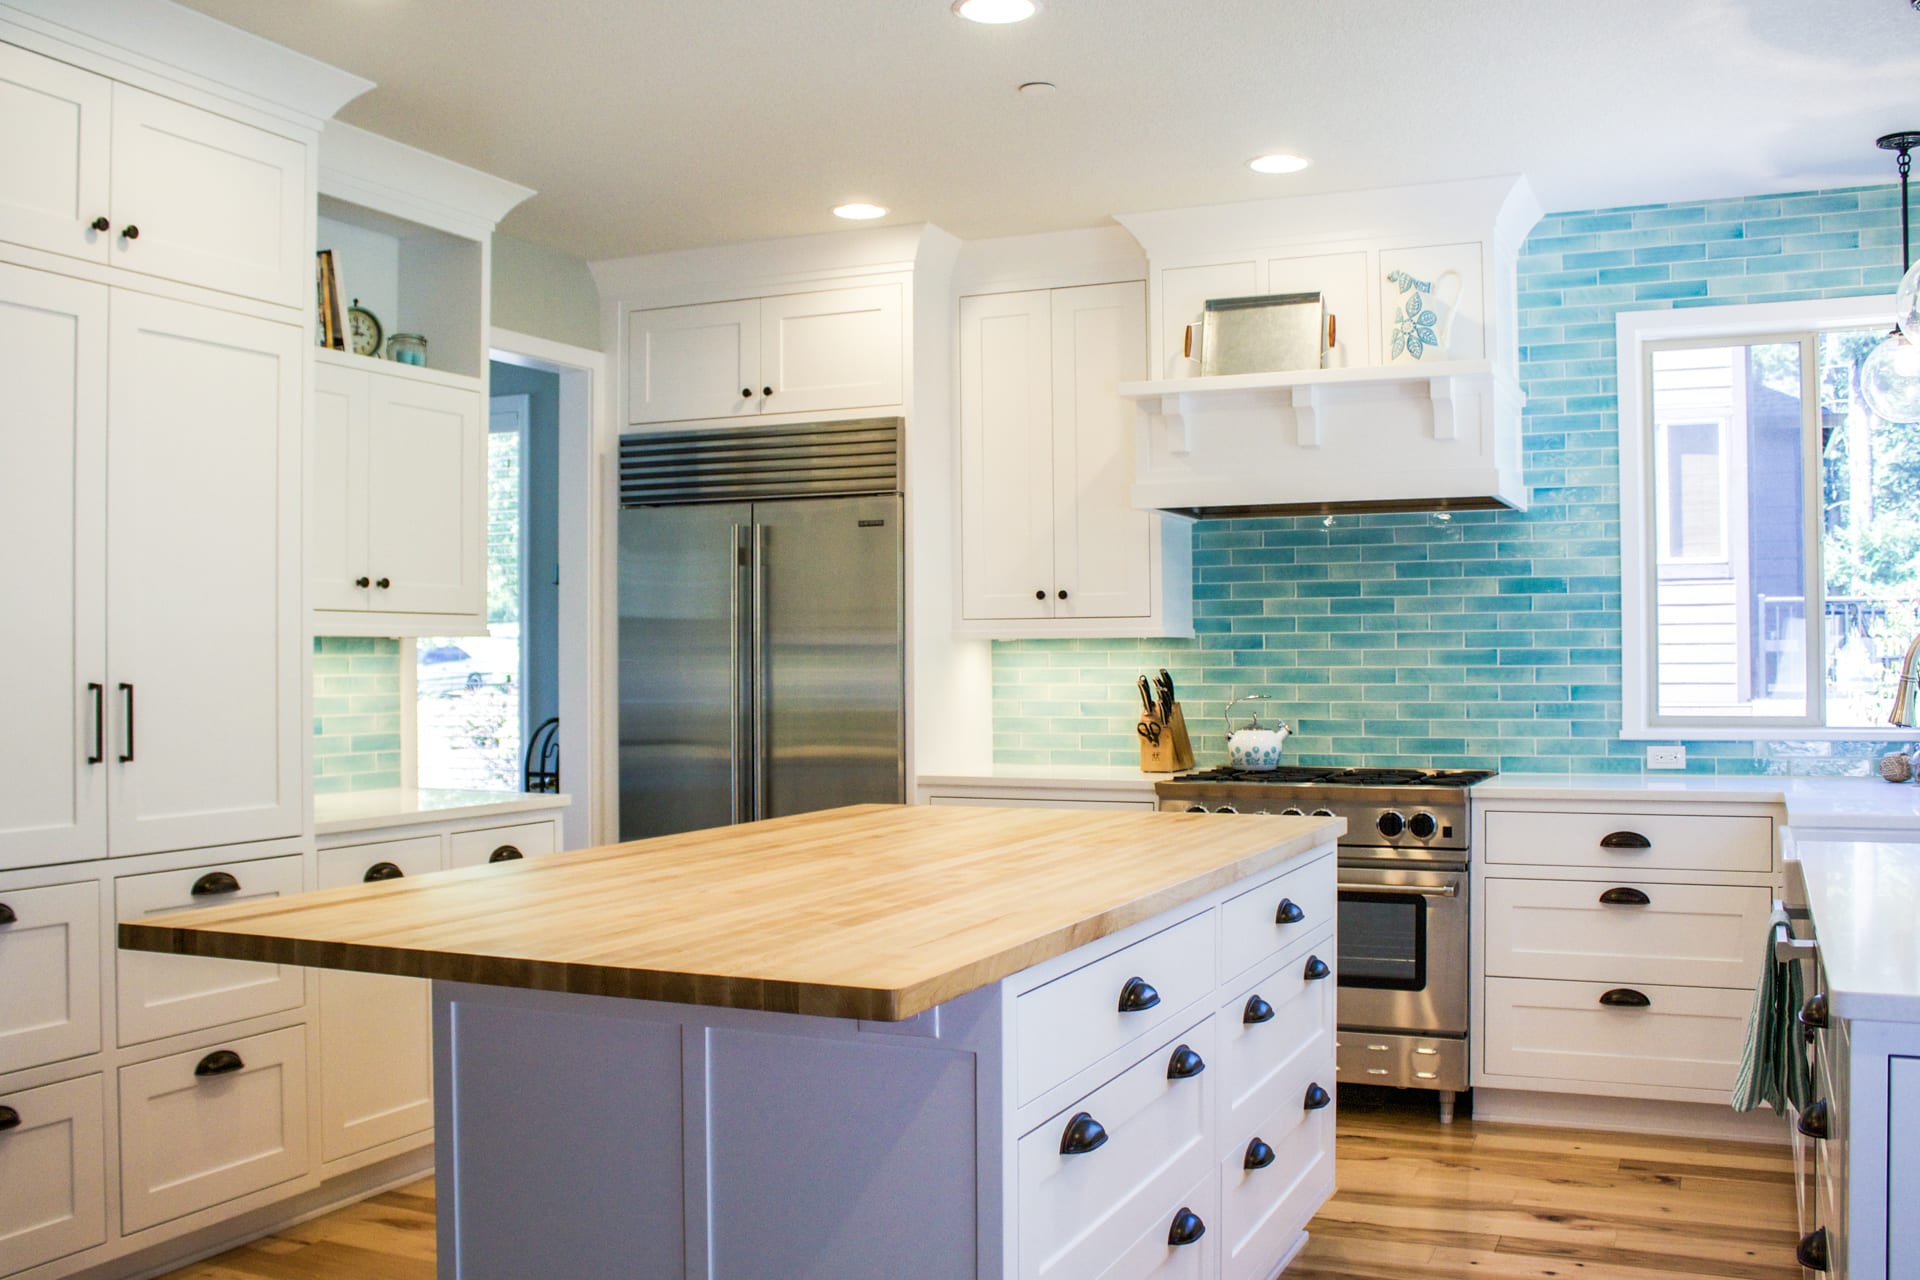 Custom designed kitchen with white and bold blue backsplash